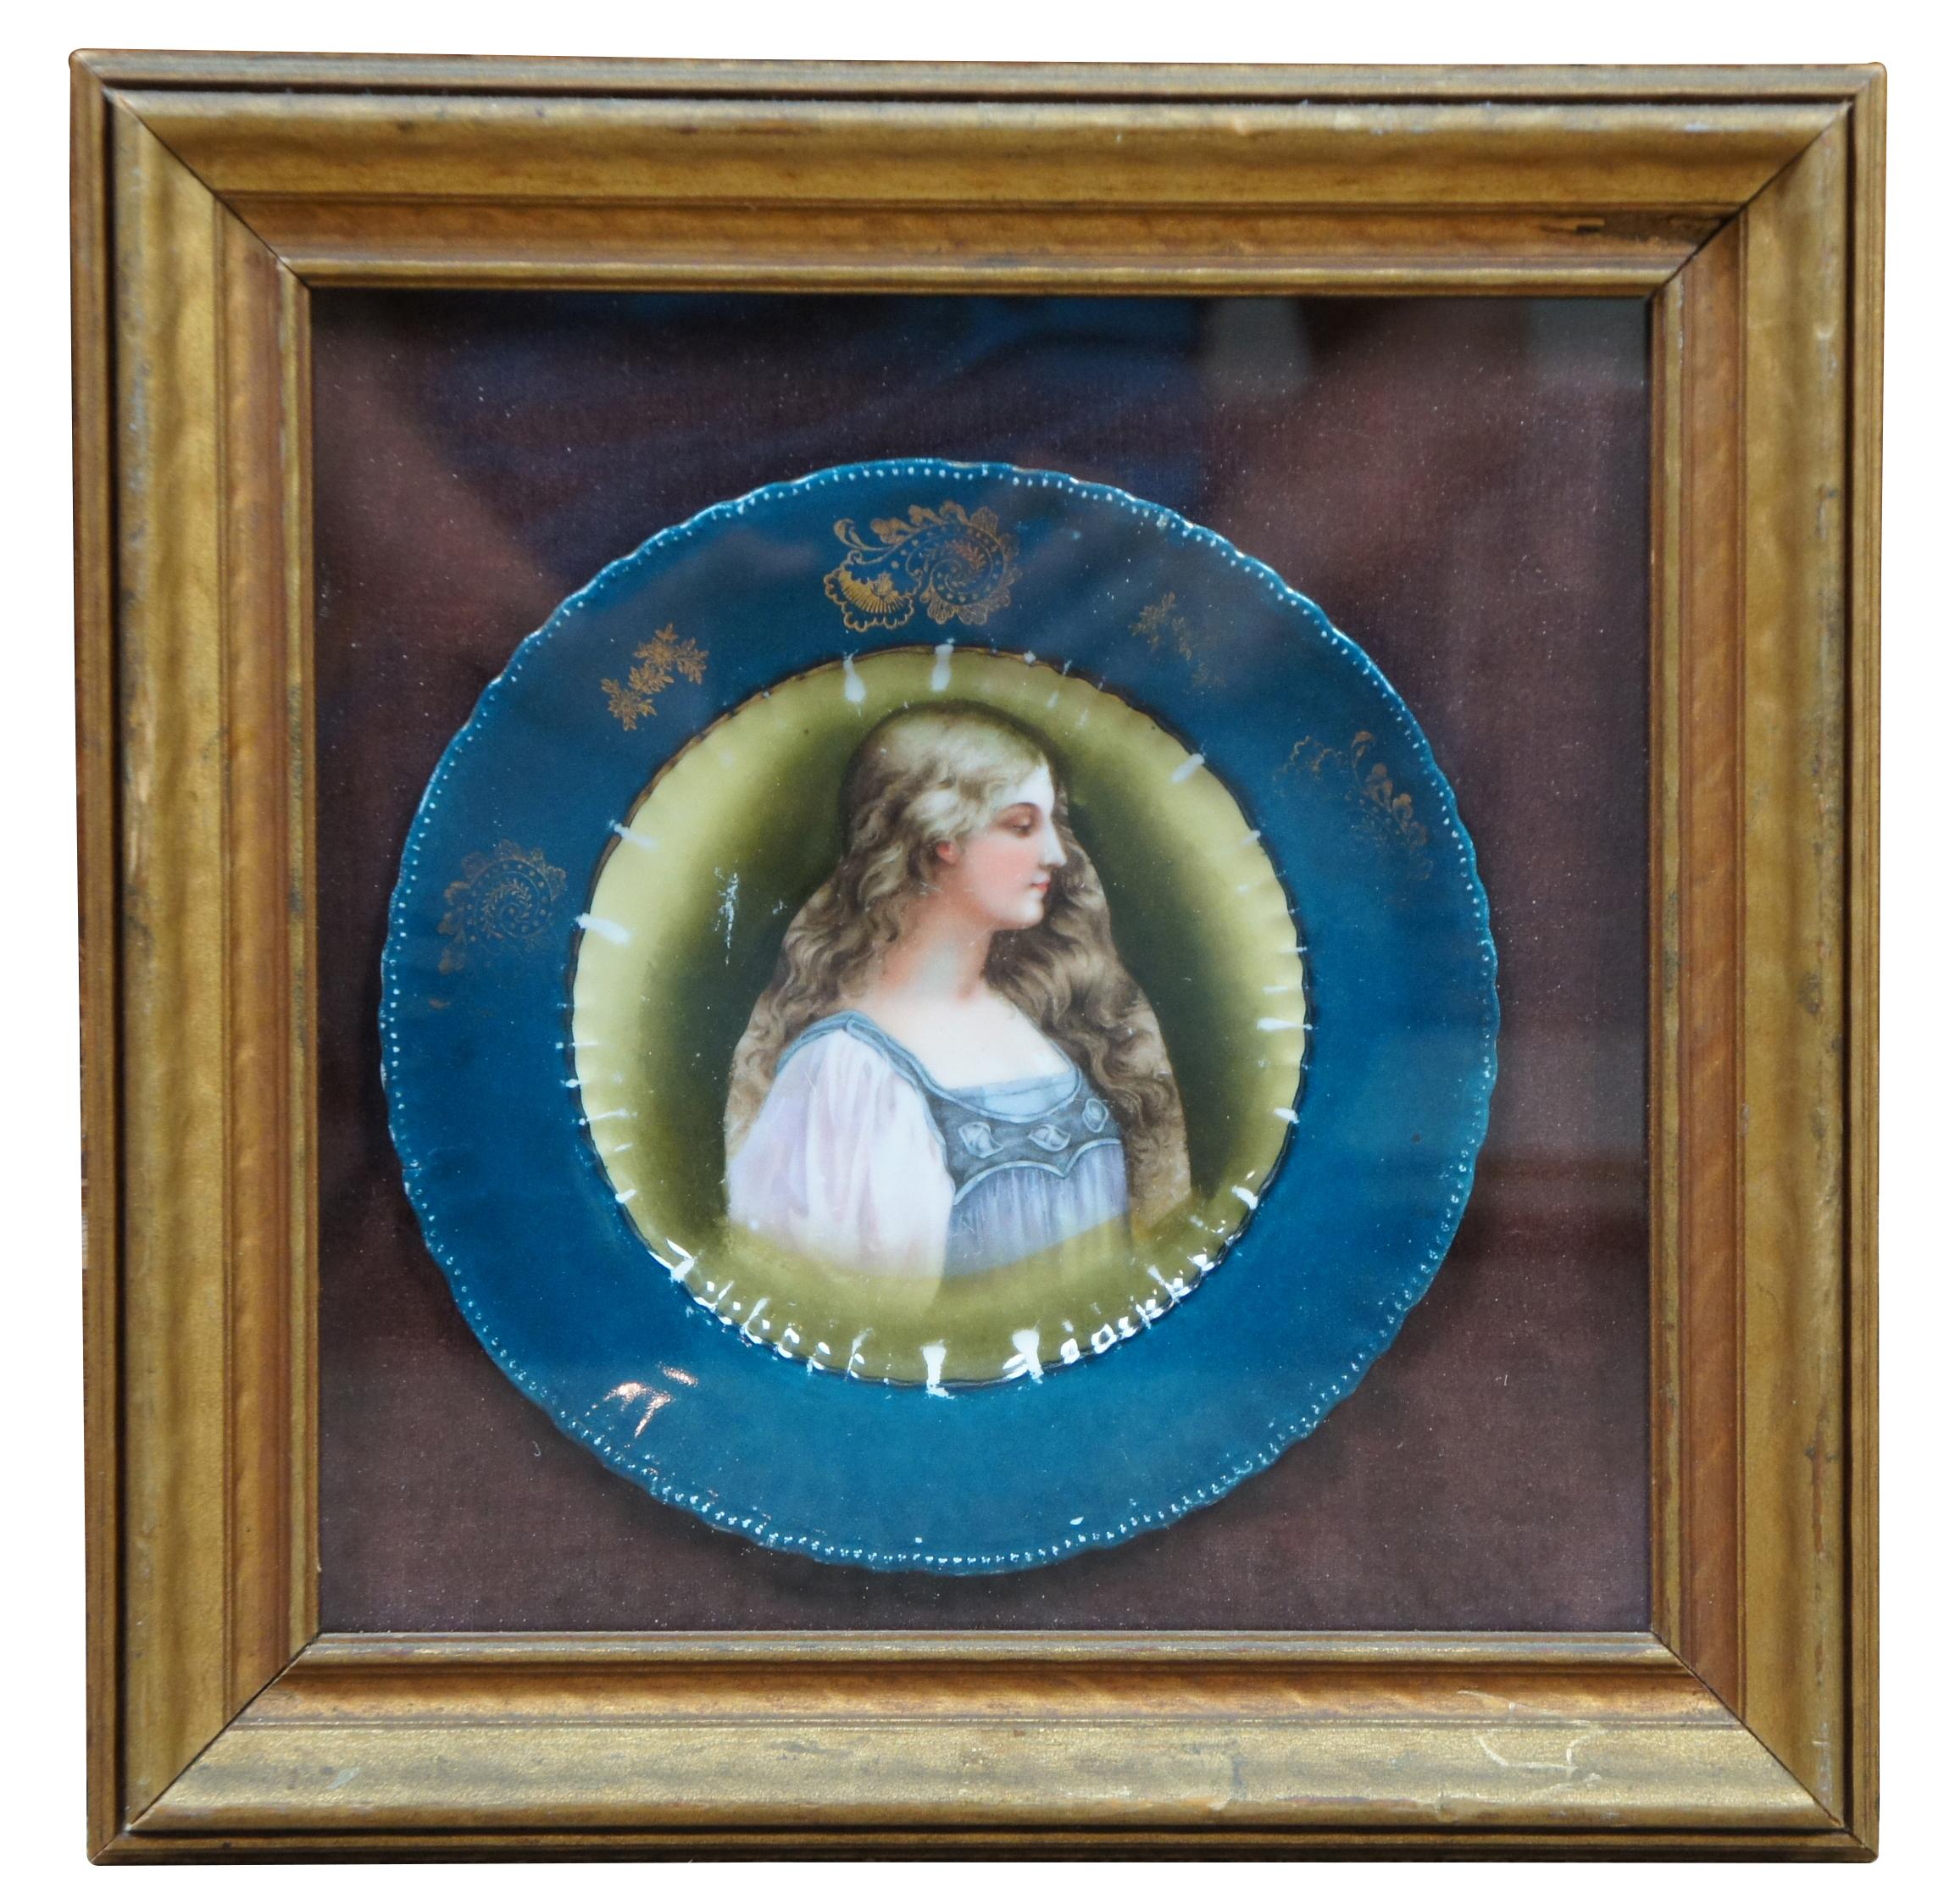 Satz von drei gerahmten Porträttafeln, die Frauen im Renaissancestil aus Victoria Austria darstellen. Diese Platten wurden in der 1883 in Karlsbad (Karlovy Vary) von der Londoner Firma Lazarus & Rosenfeld Ltd. gegründeten Fabrik hergestellt. Im Jahr